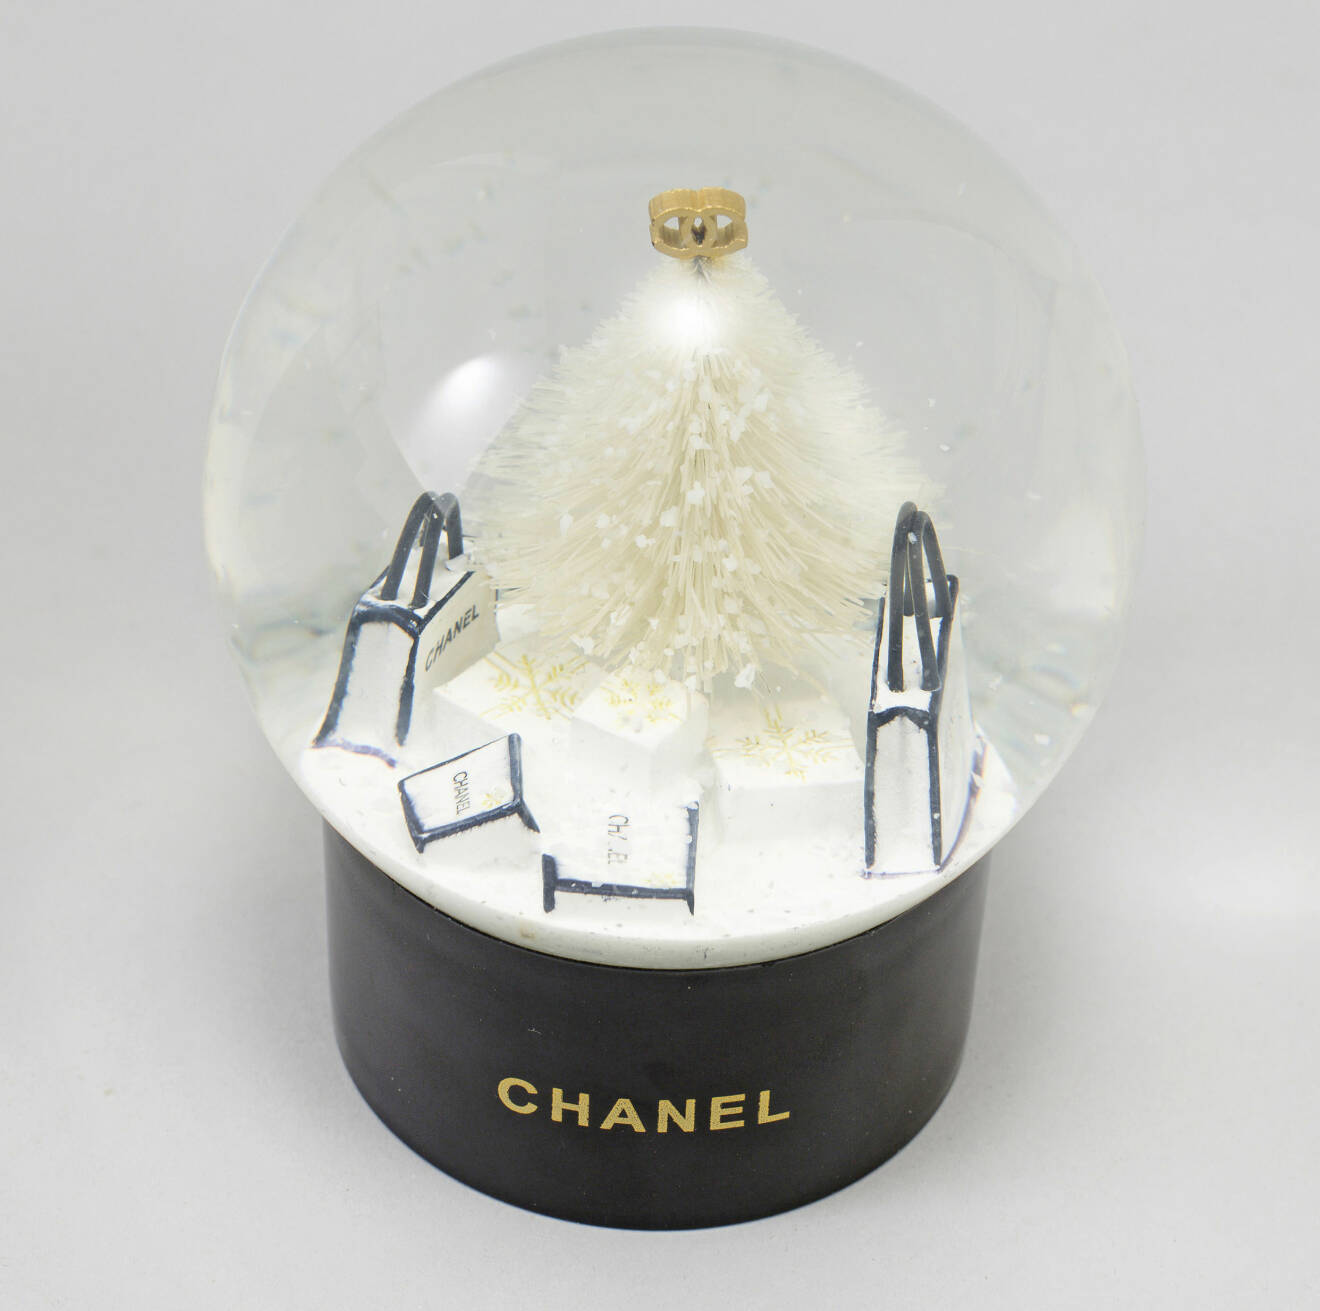 Snöglob från Chanel från 2012/13.